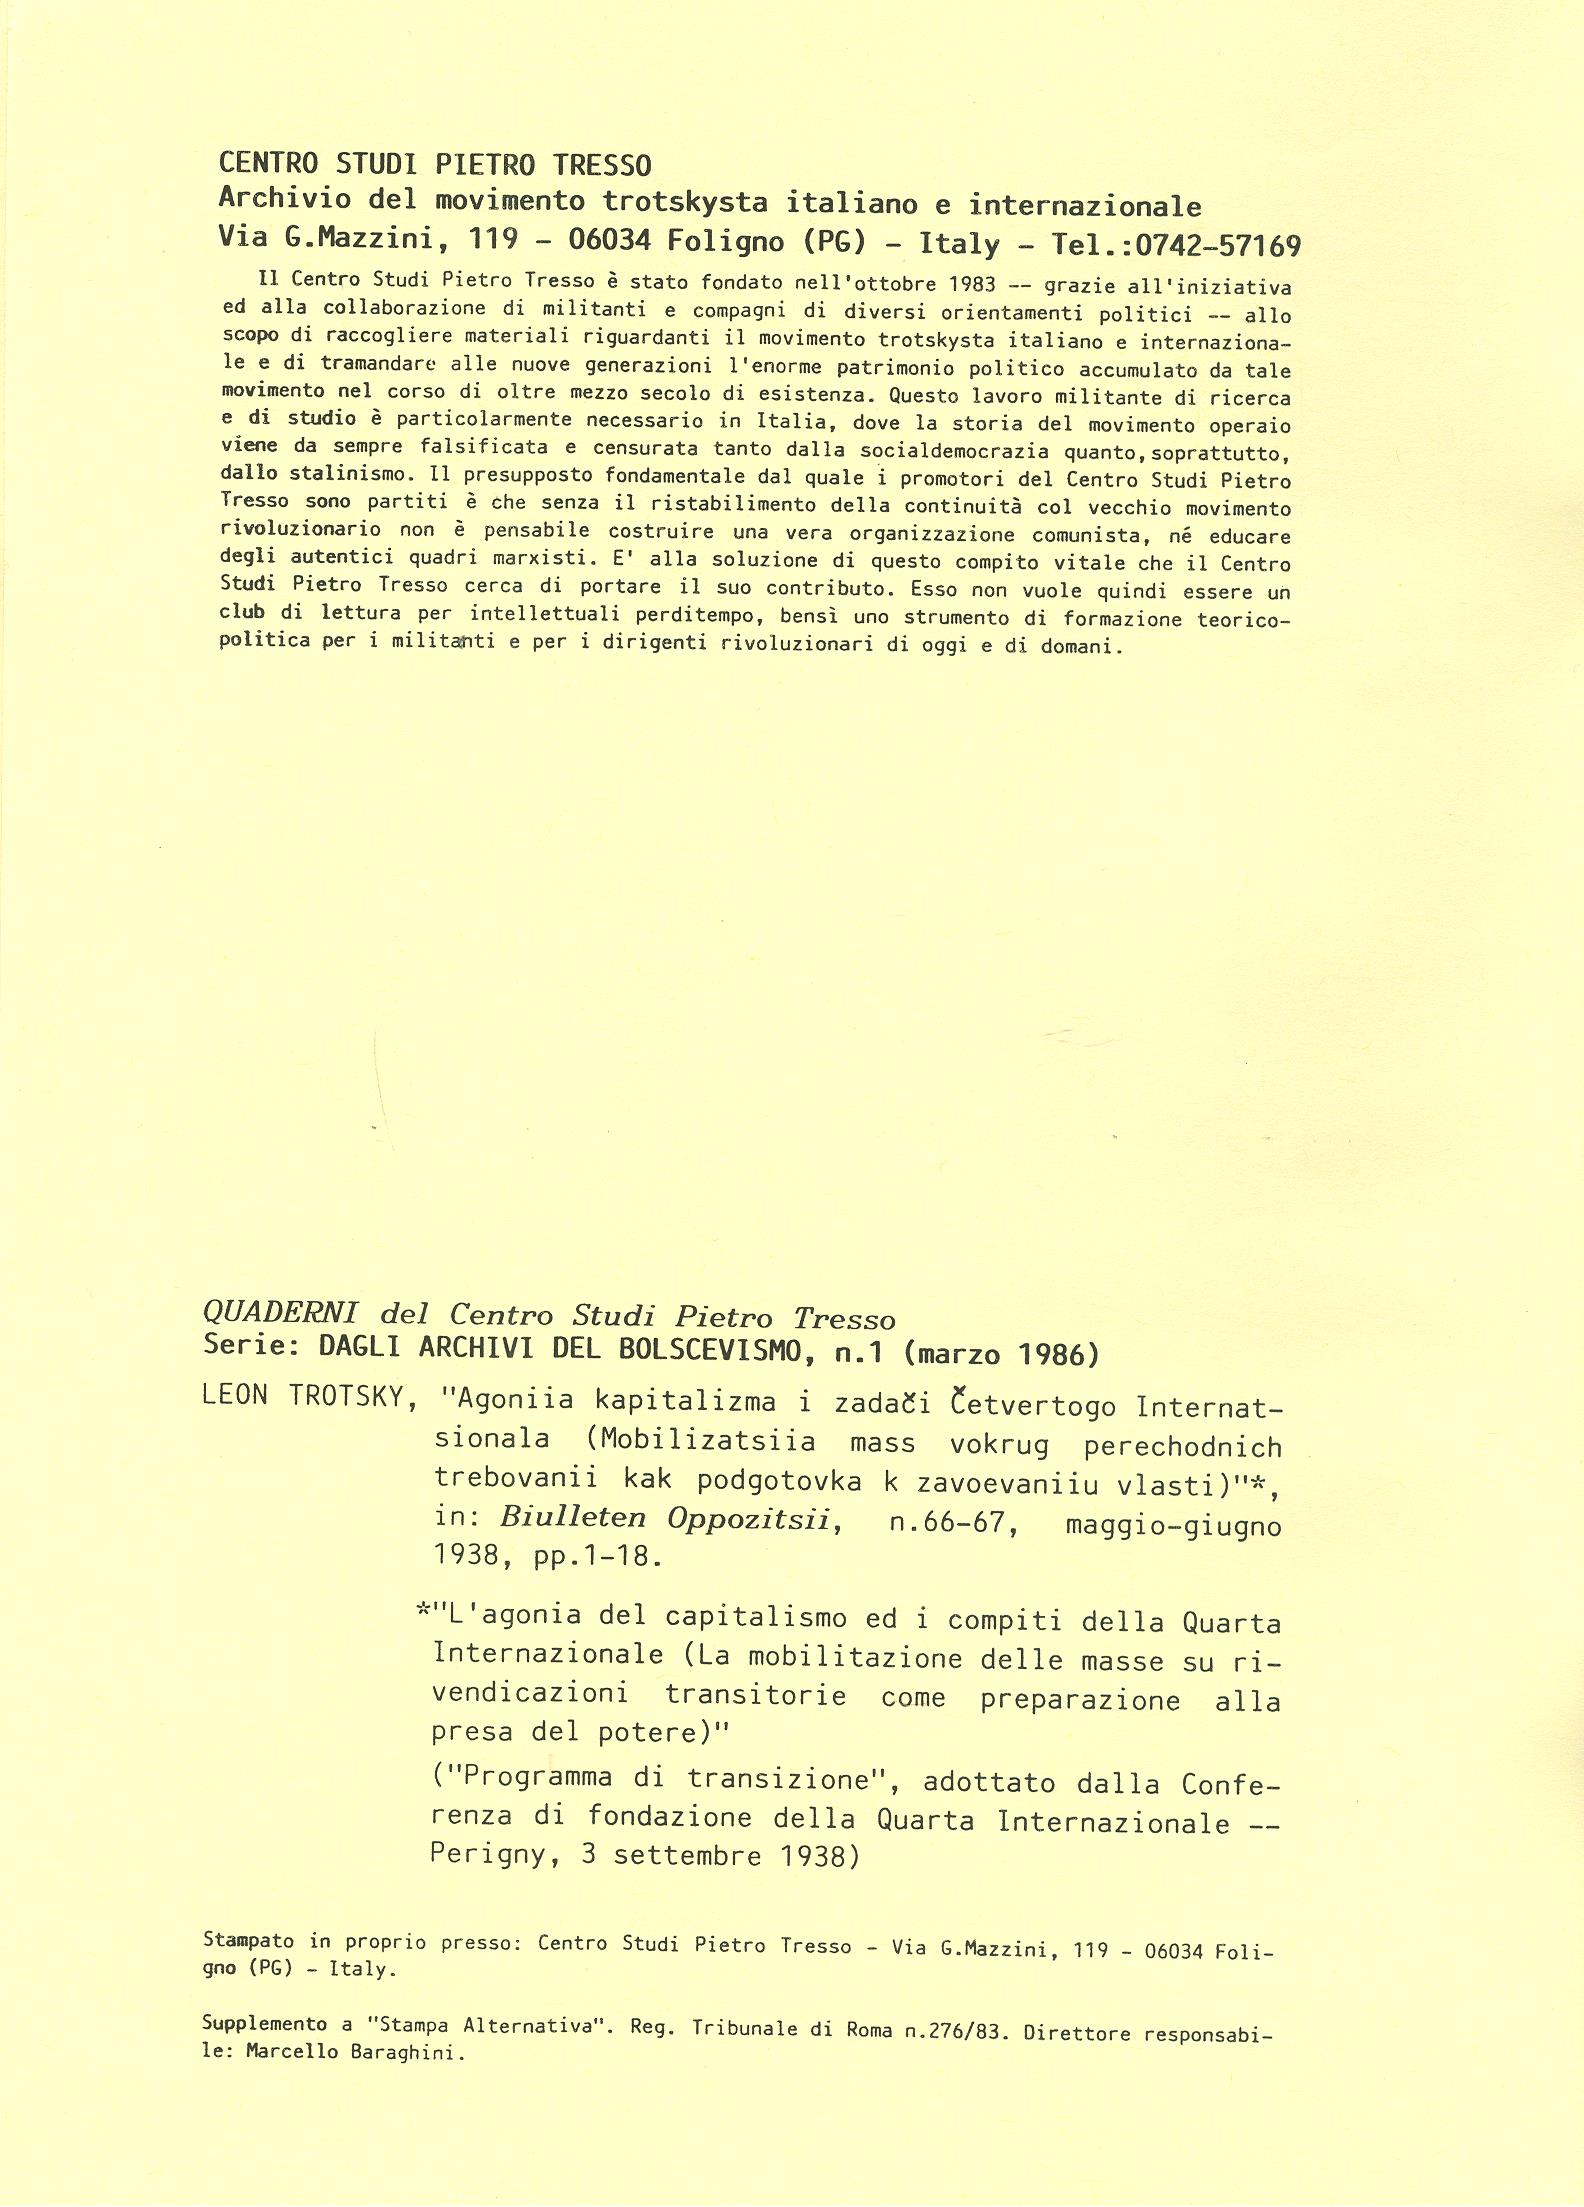 Dagli archivi del bolscevismo n. 1 (marzo 1986) - pag. I